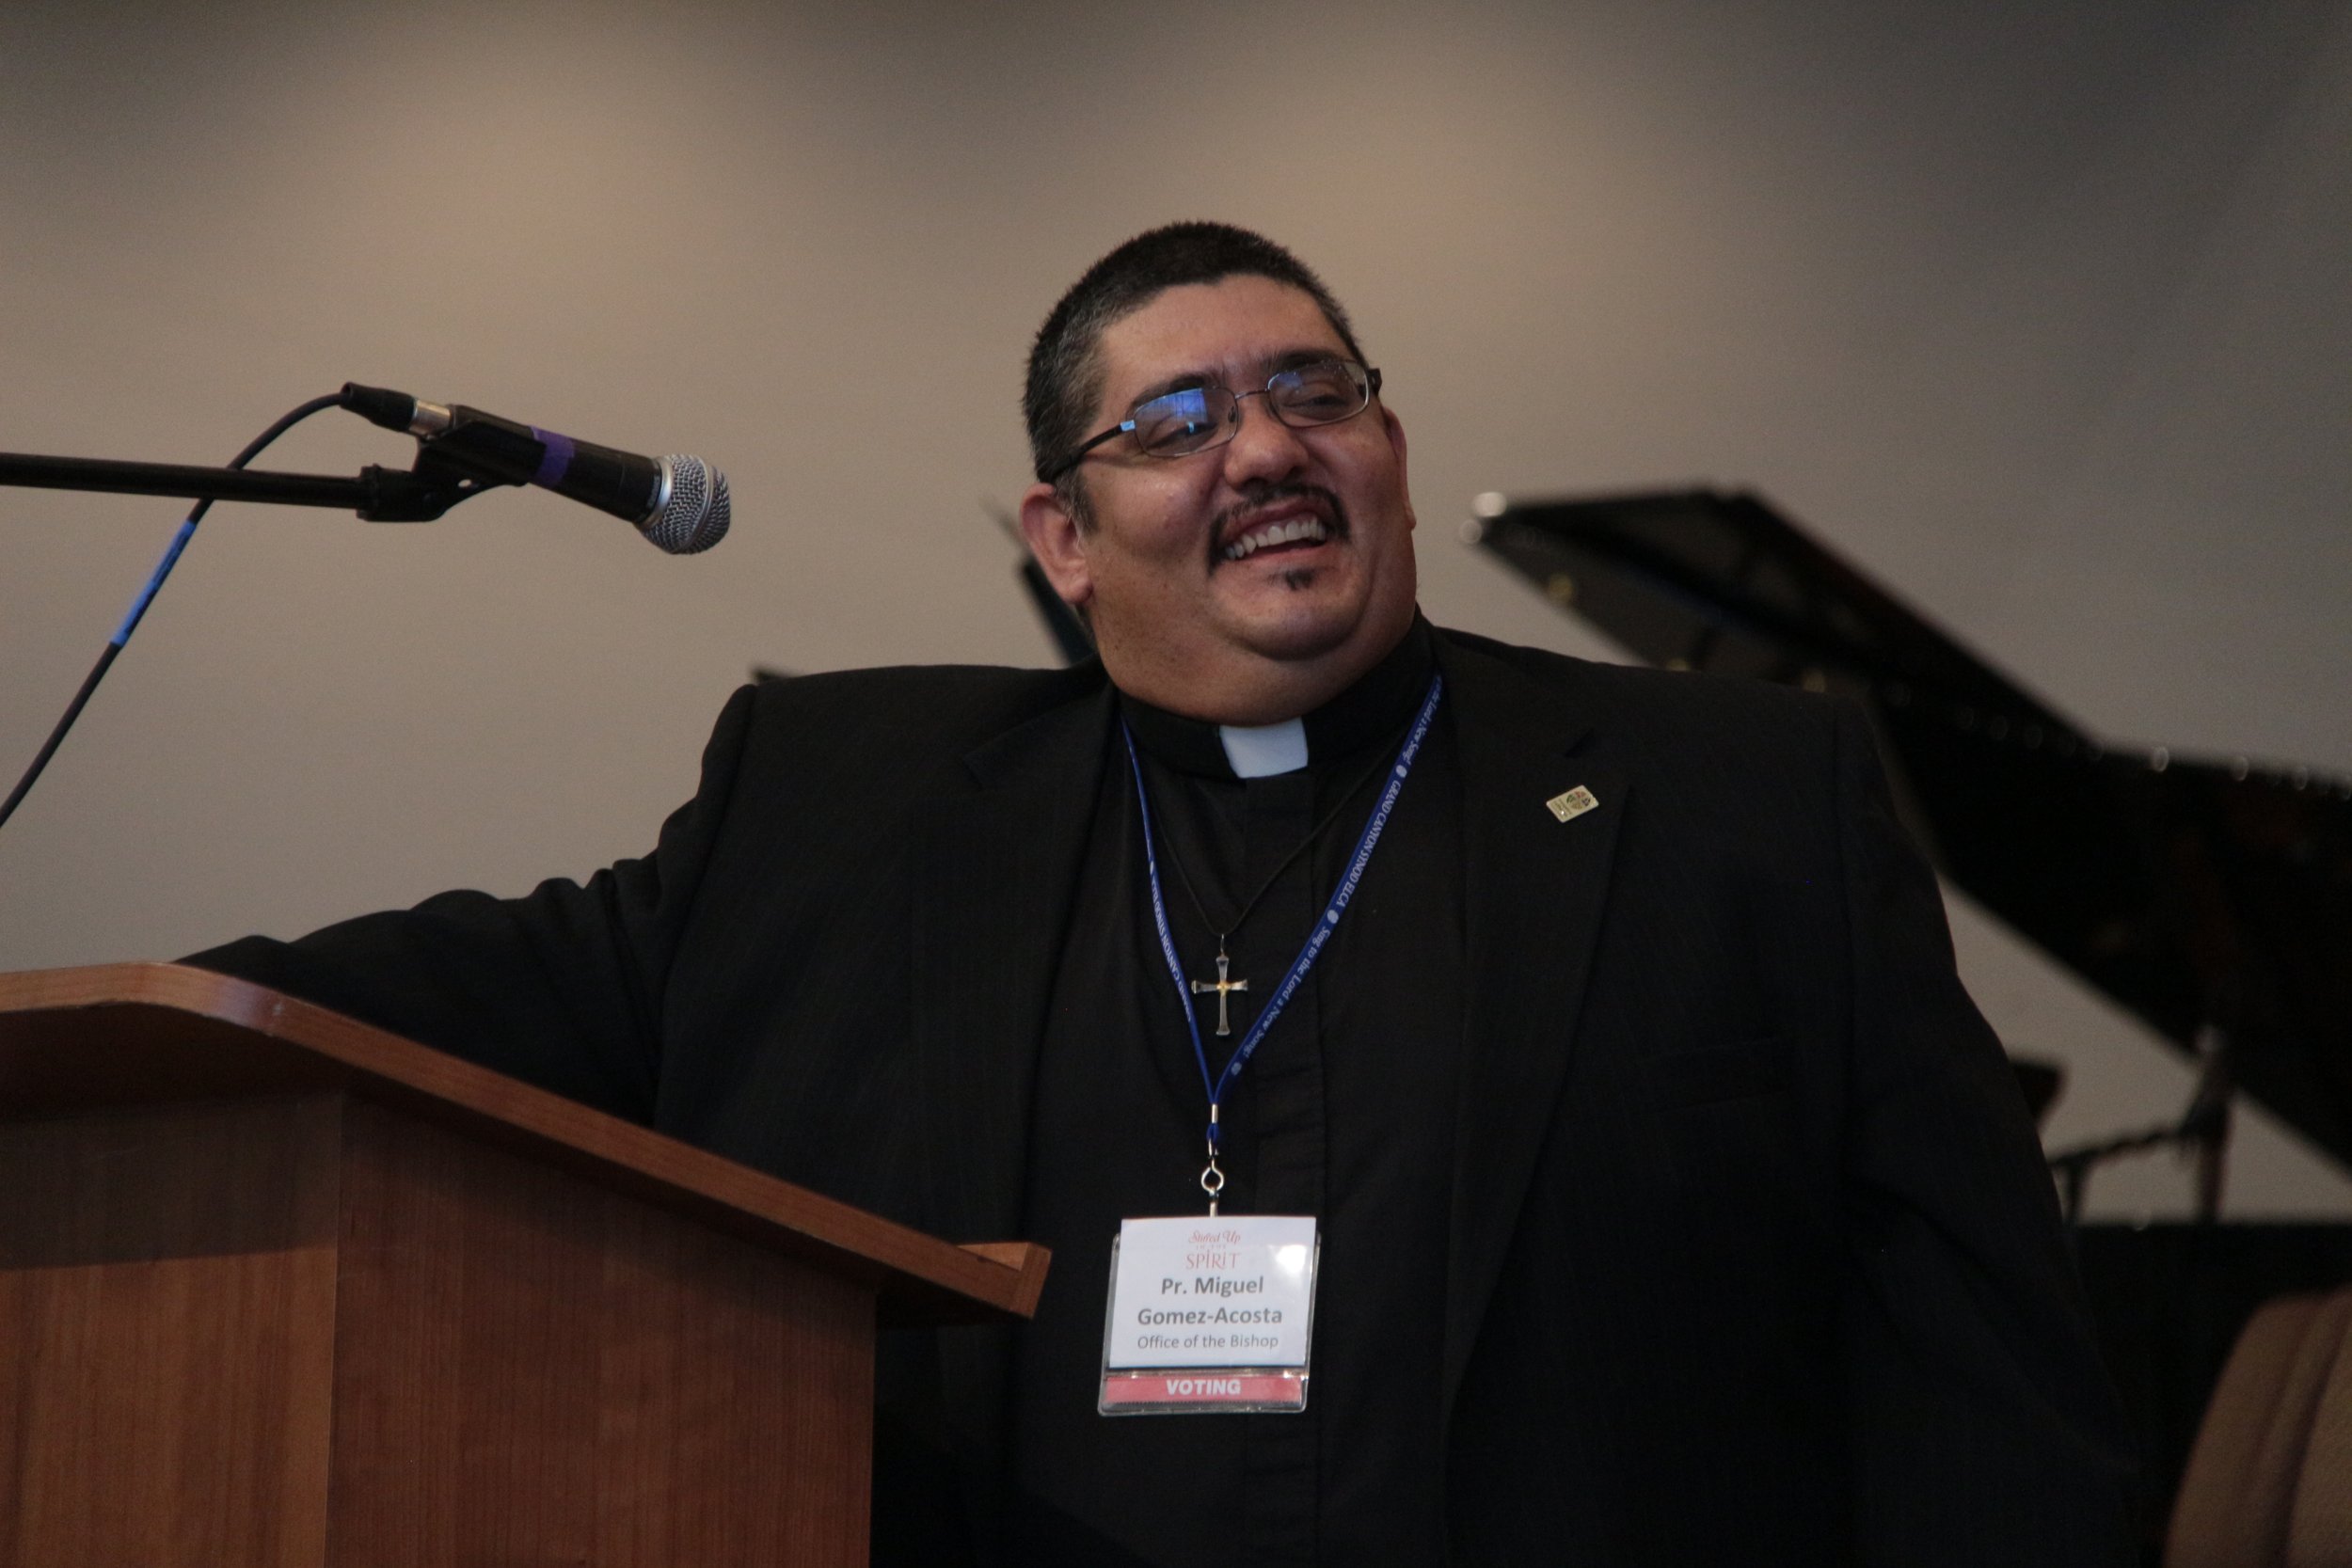 Rev. Miguel Gomez-Acosta